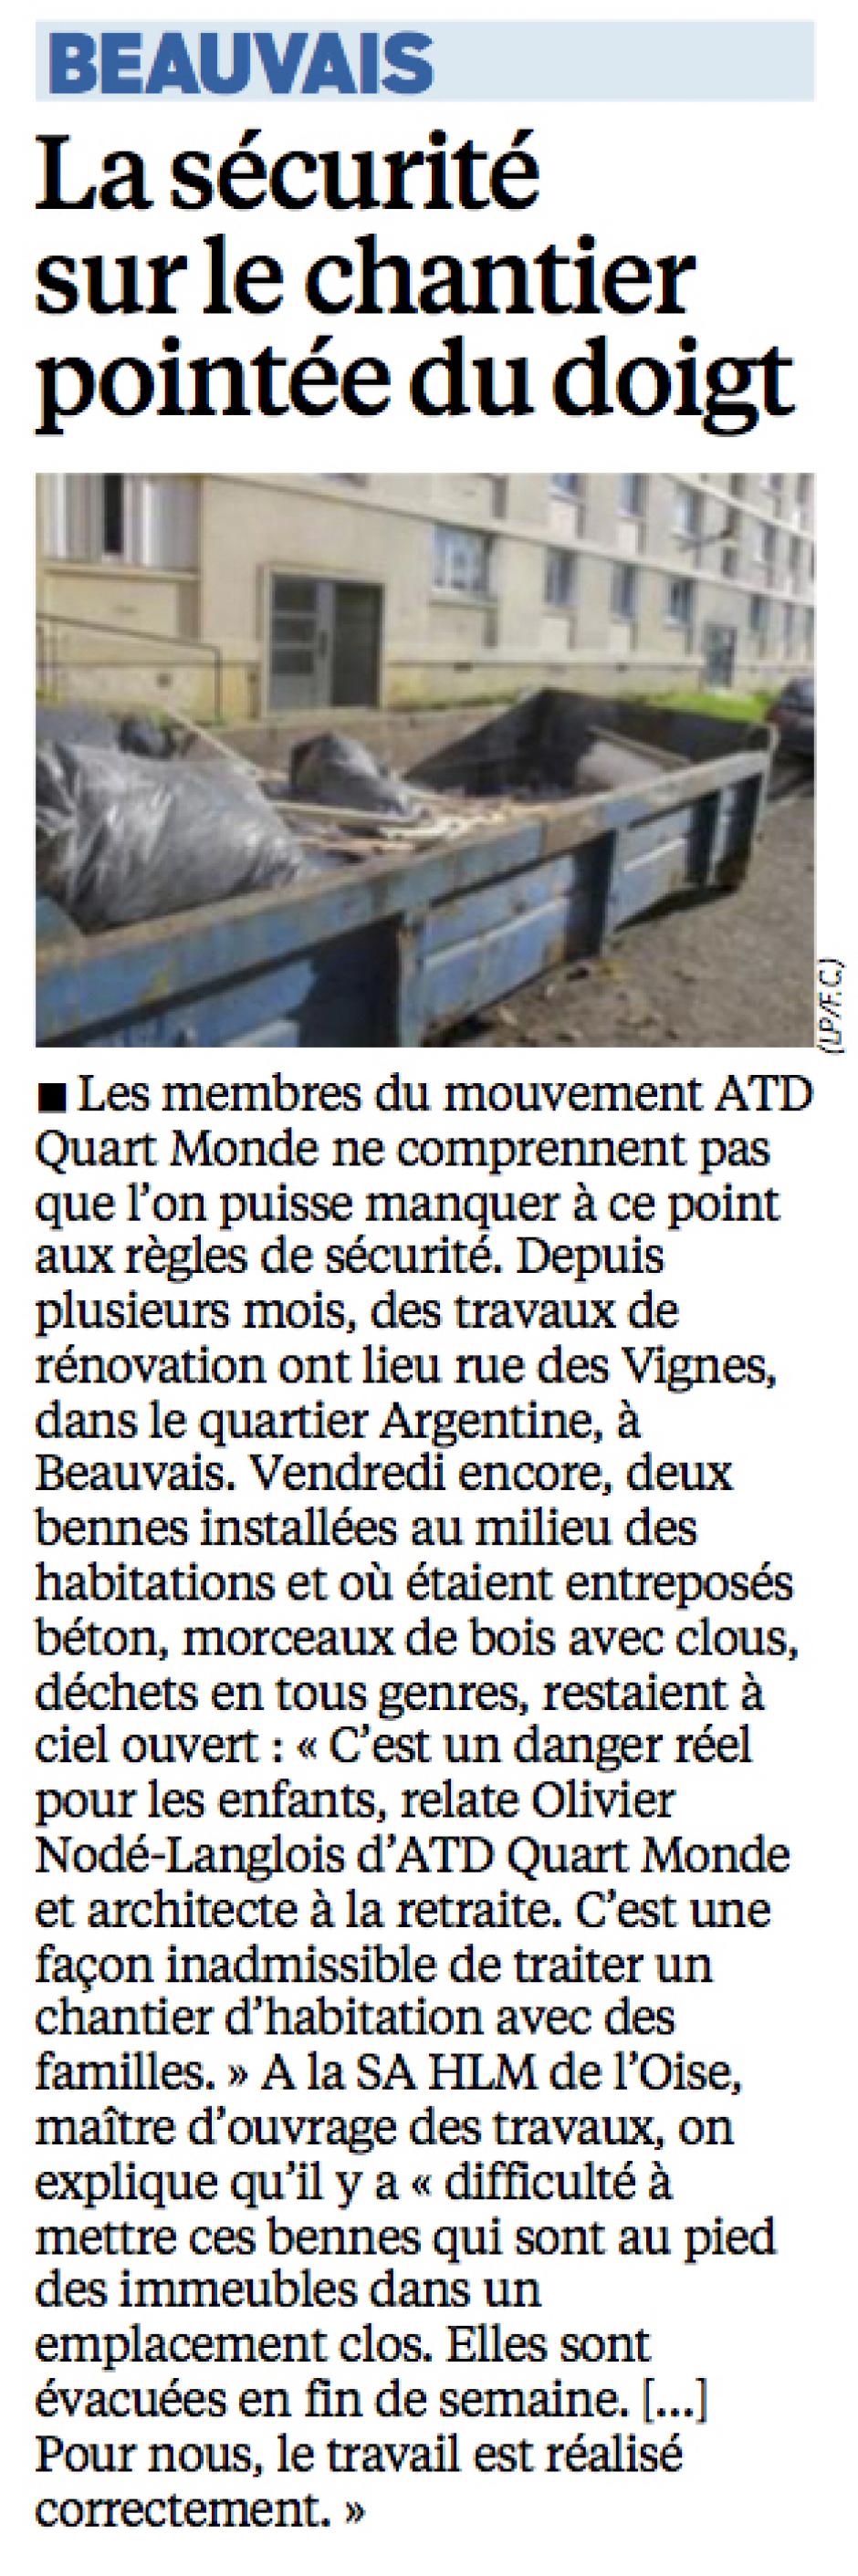 20141110-LeP-Beauvais-La sécurité sur le chantier pointée du doigt [ATD Quart Monde]